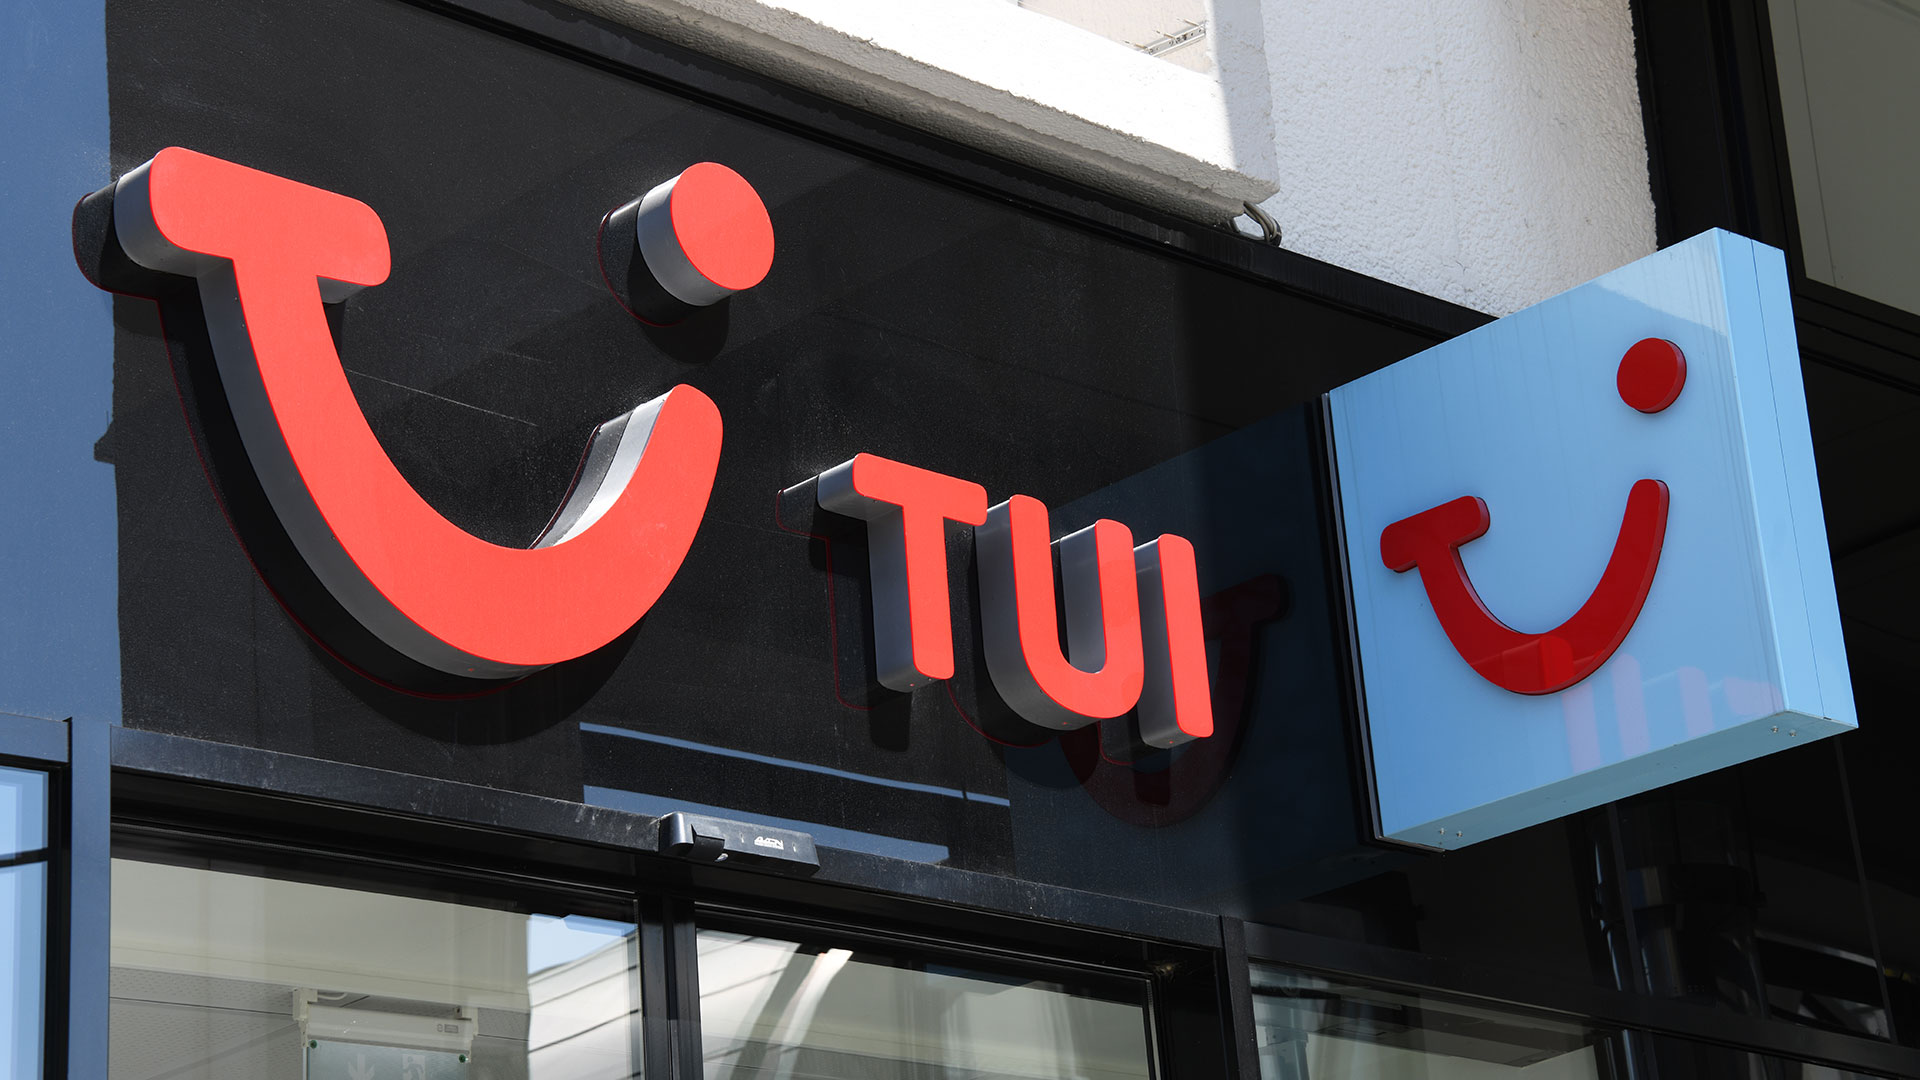 TUI&#8209;Aktie minus 48 Prozent?!?  Was dahinter steckt und wie Anleger reagieren sollten (Foto: nitpicker/Shutterstock)